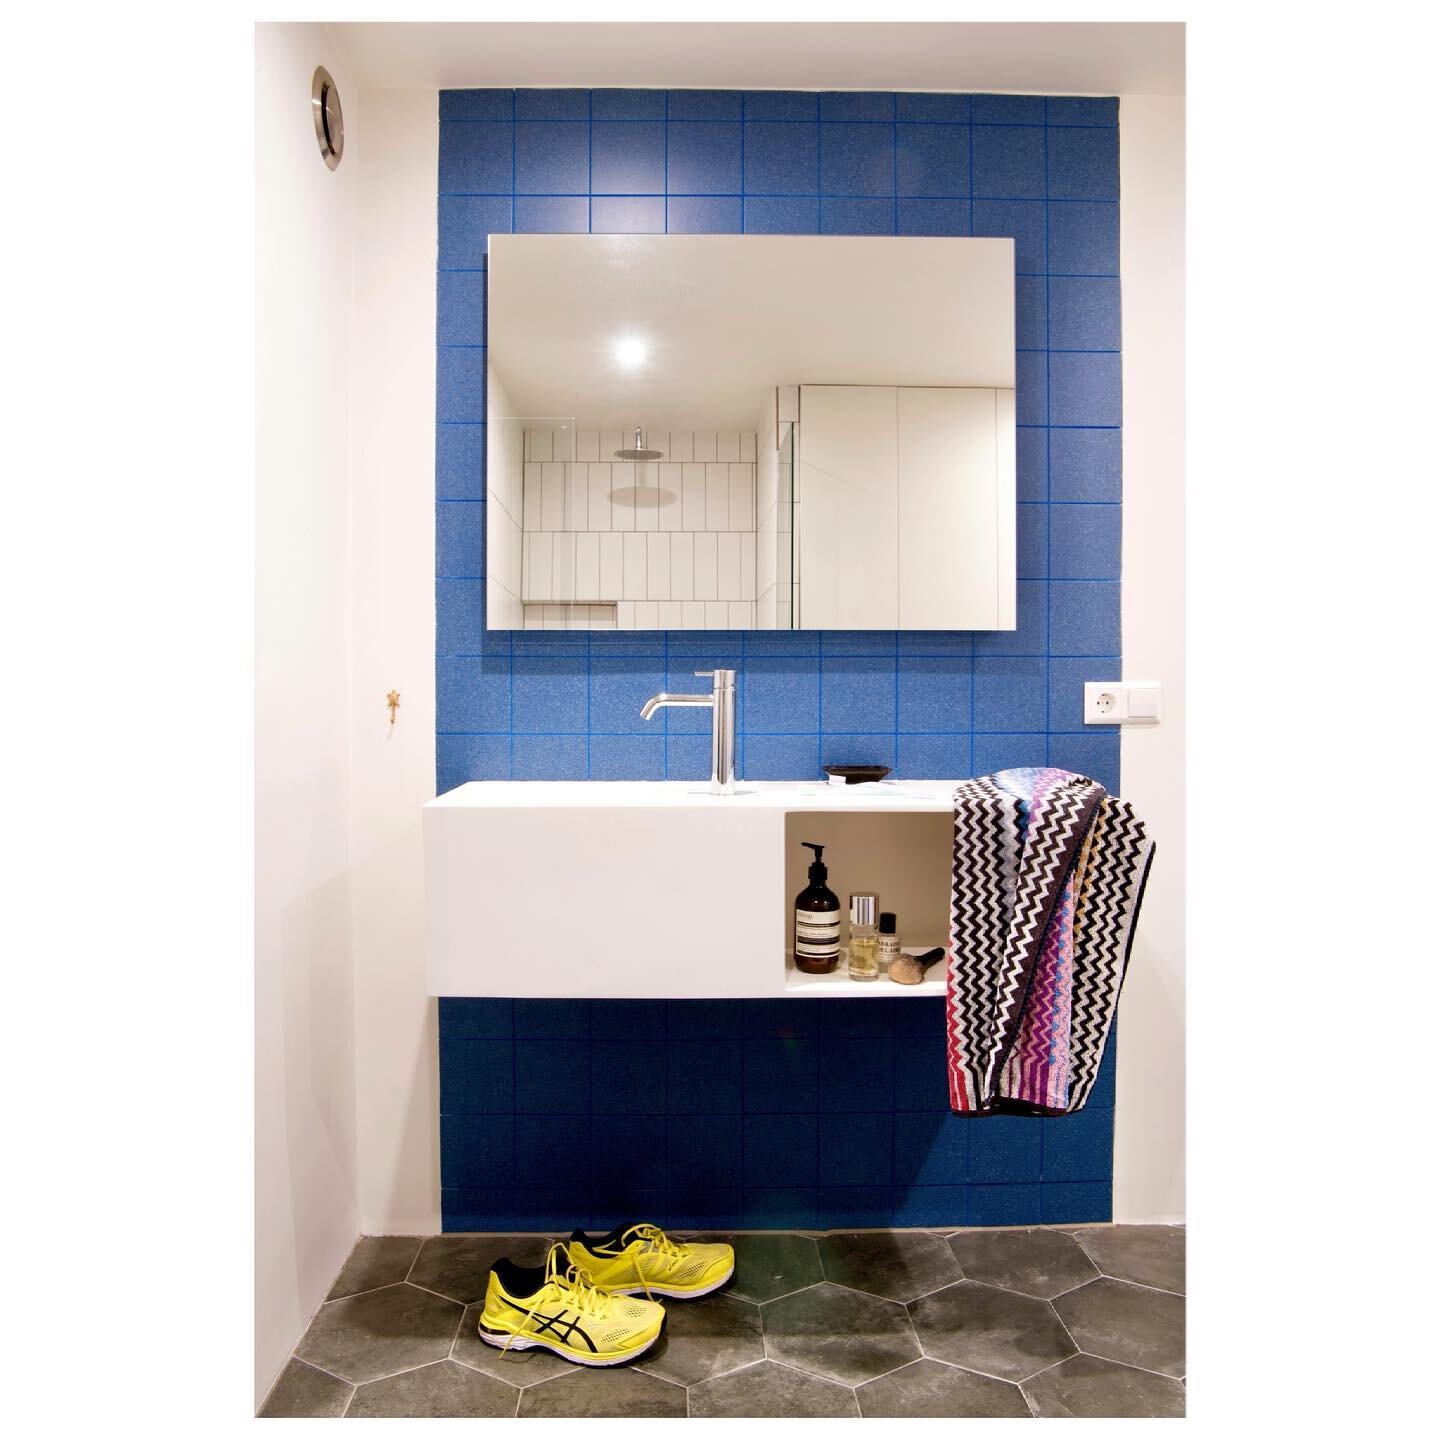 Oelalalalaaaa badkamer met blauwe tegels en blauwe voegen!!! Ontworpen door @studiojaaf!  We love it!Gefotografeerd en gestyled @studiojaaf voor @getclever #badakmer#badkamergoals#blauwetegels#blueroom#bluebathroom#bathroomdeco#bathroomstyling#badkam